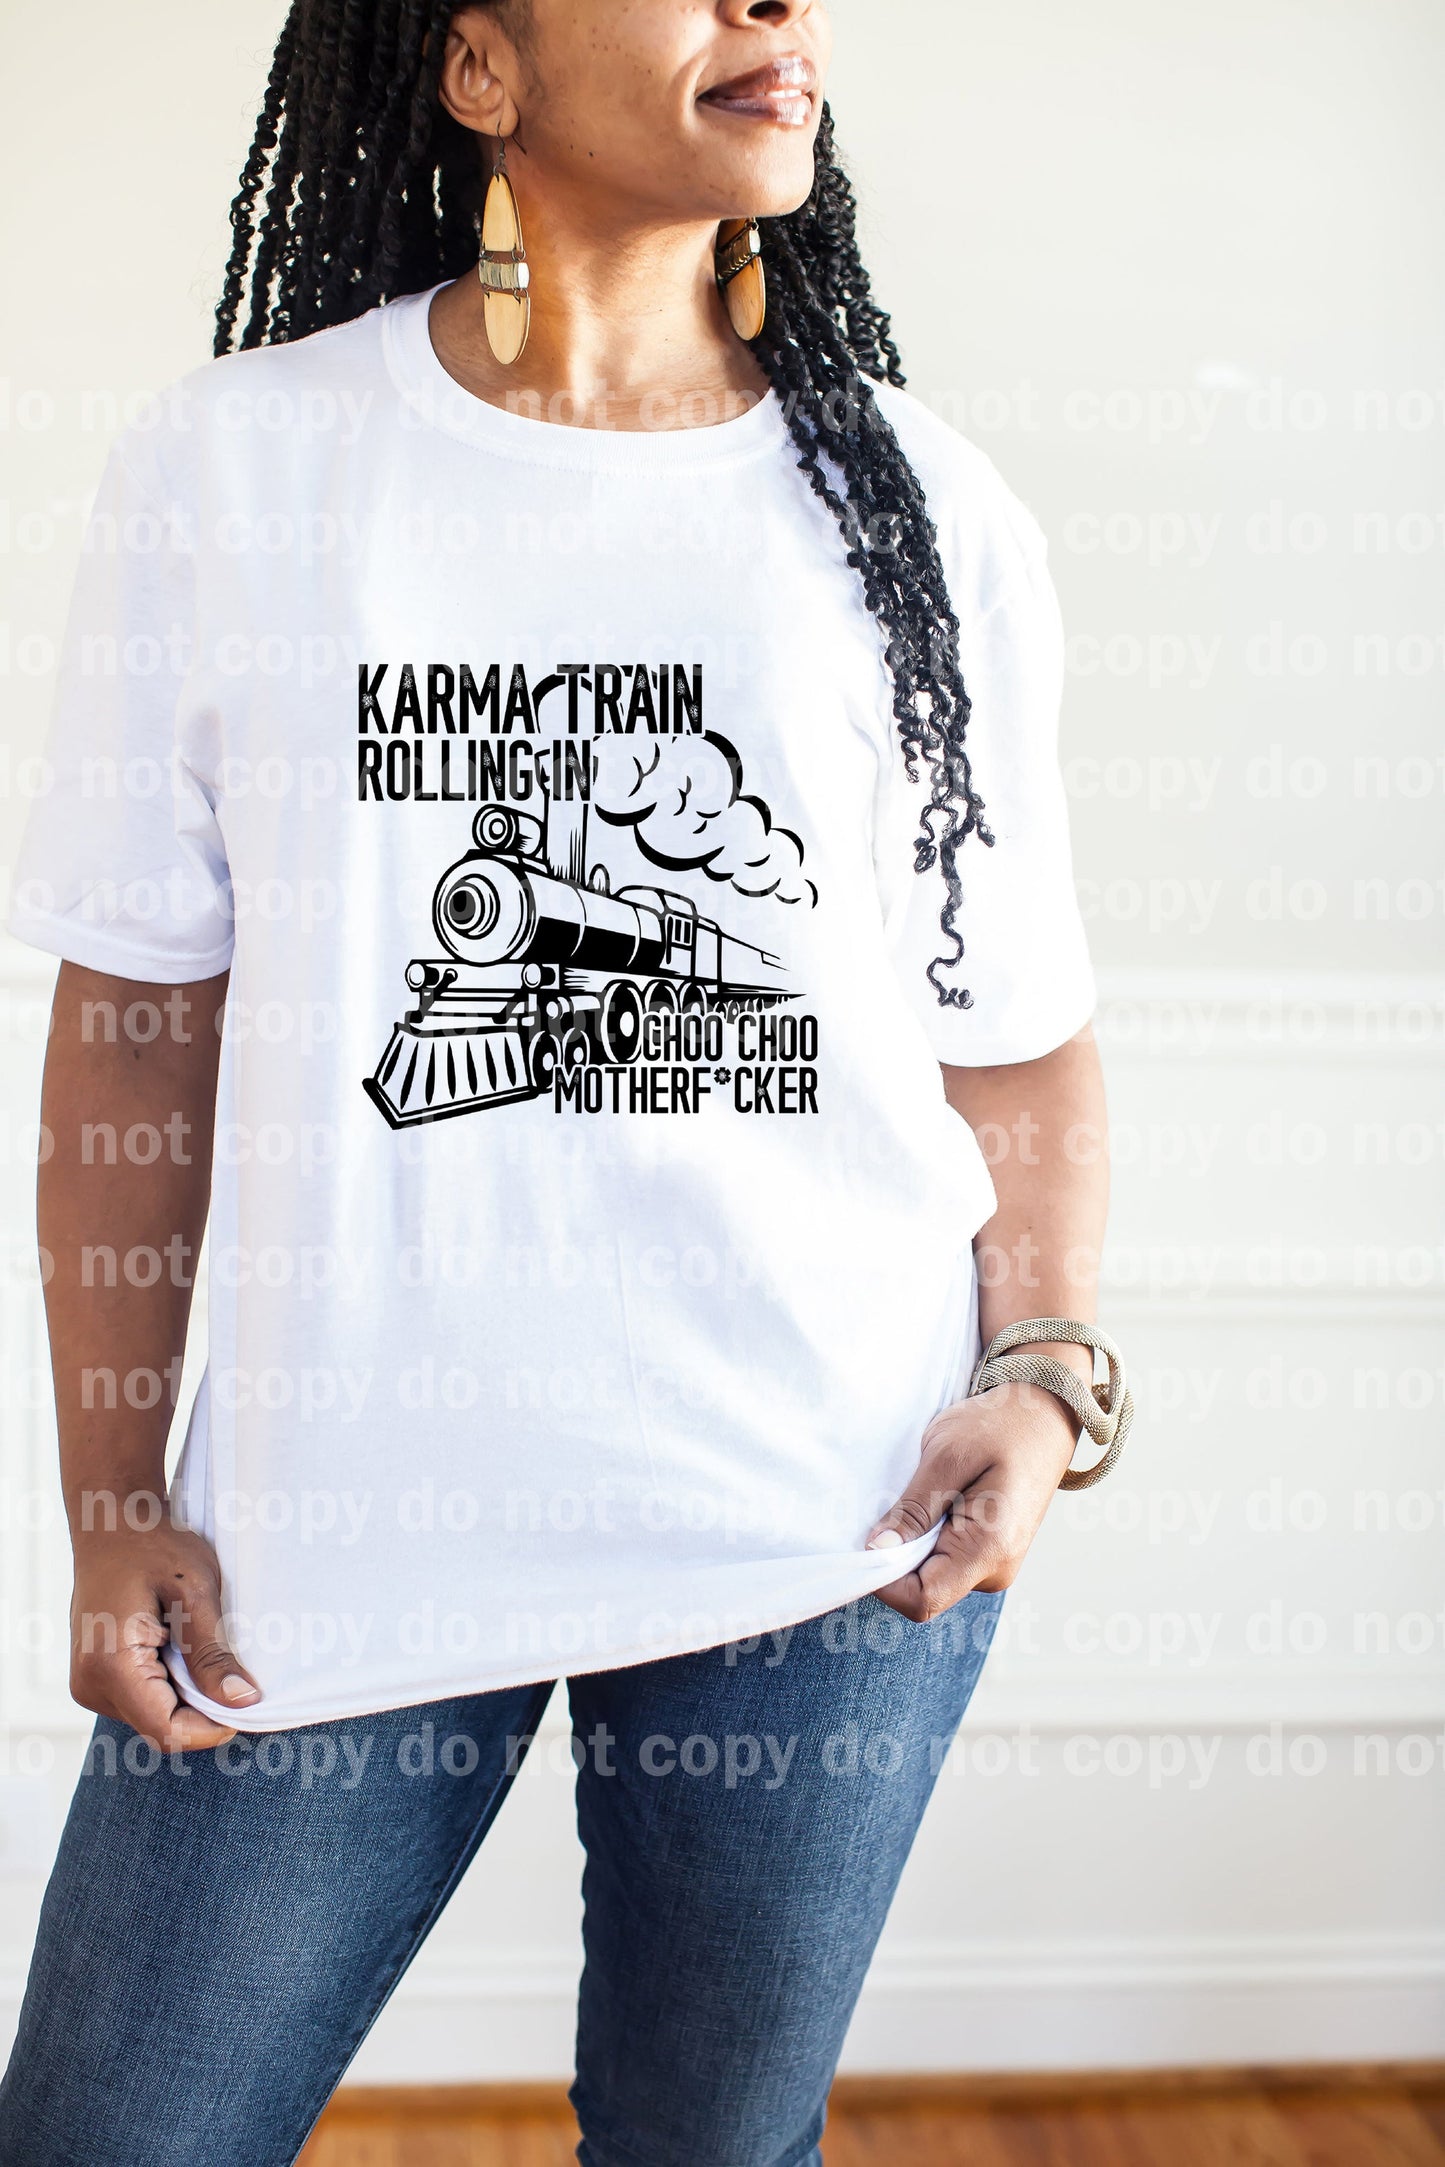 Karma Train Rolling In Dream Print o Impresión por sublimación